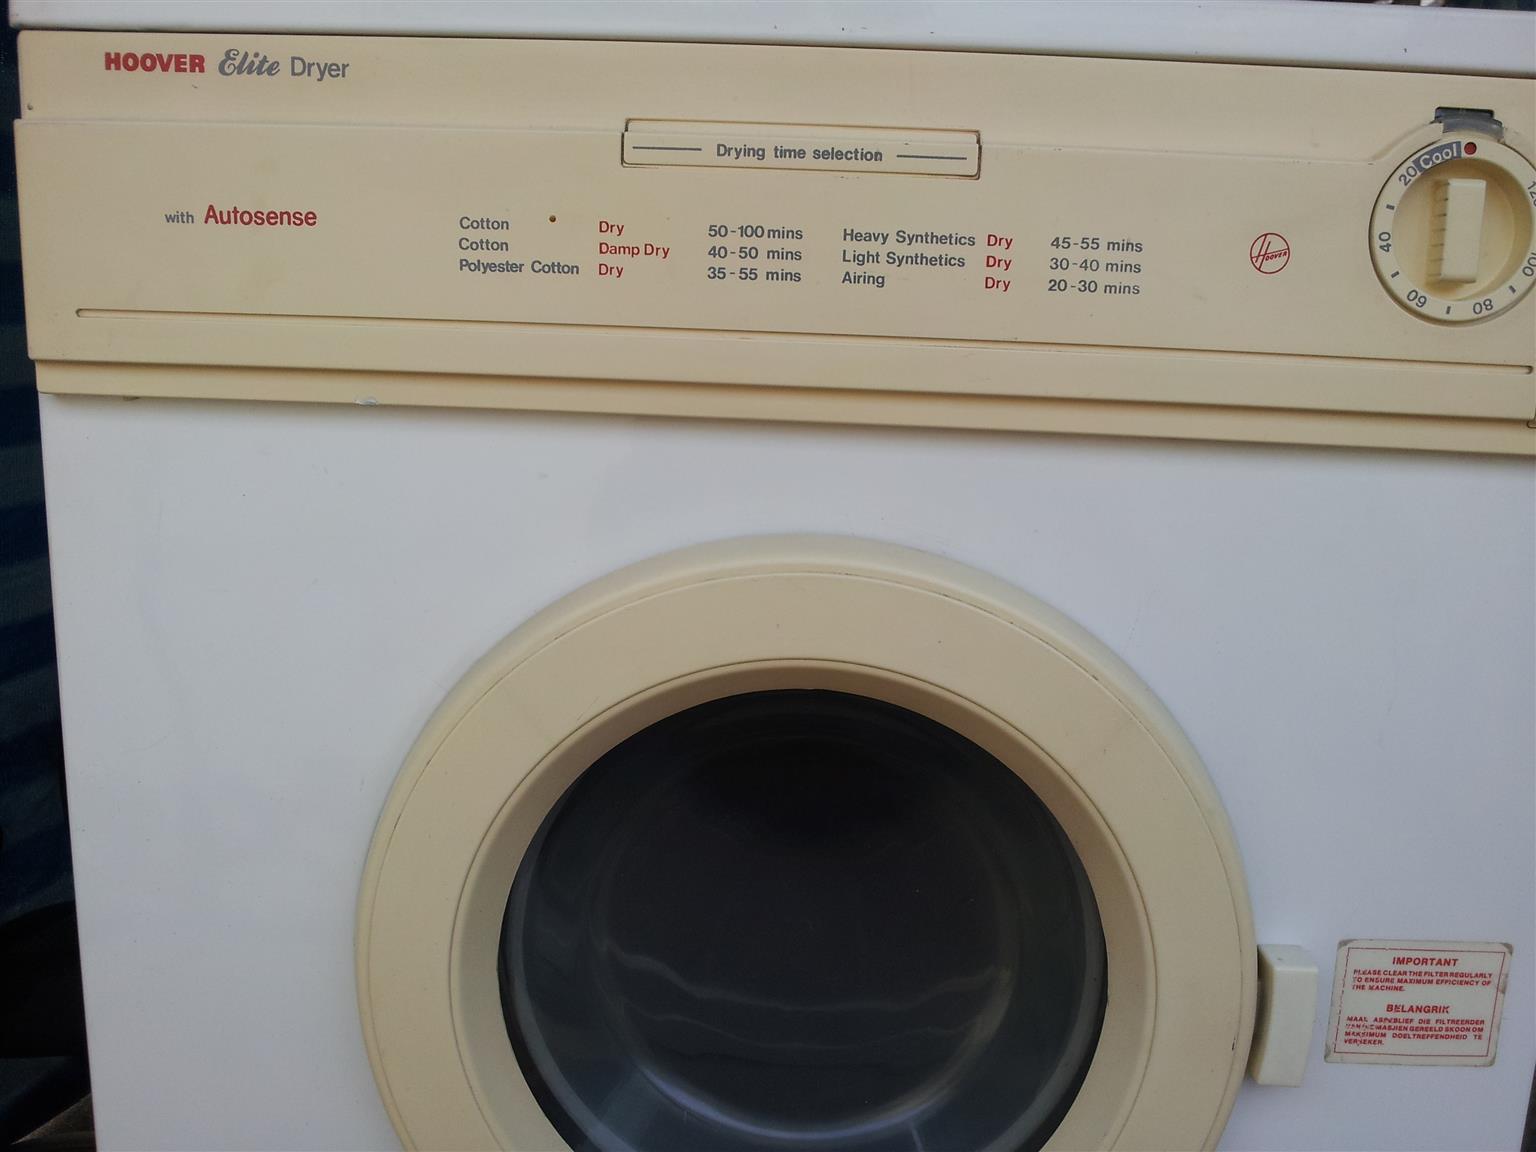 tumble dryer 5kg refurbished hoover elite model d6502